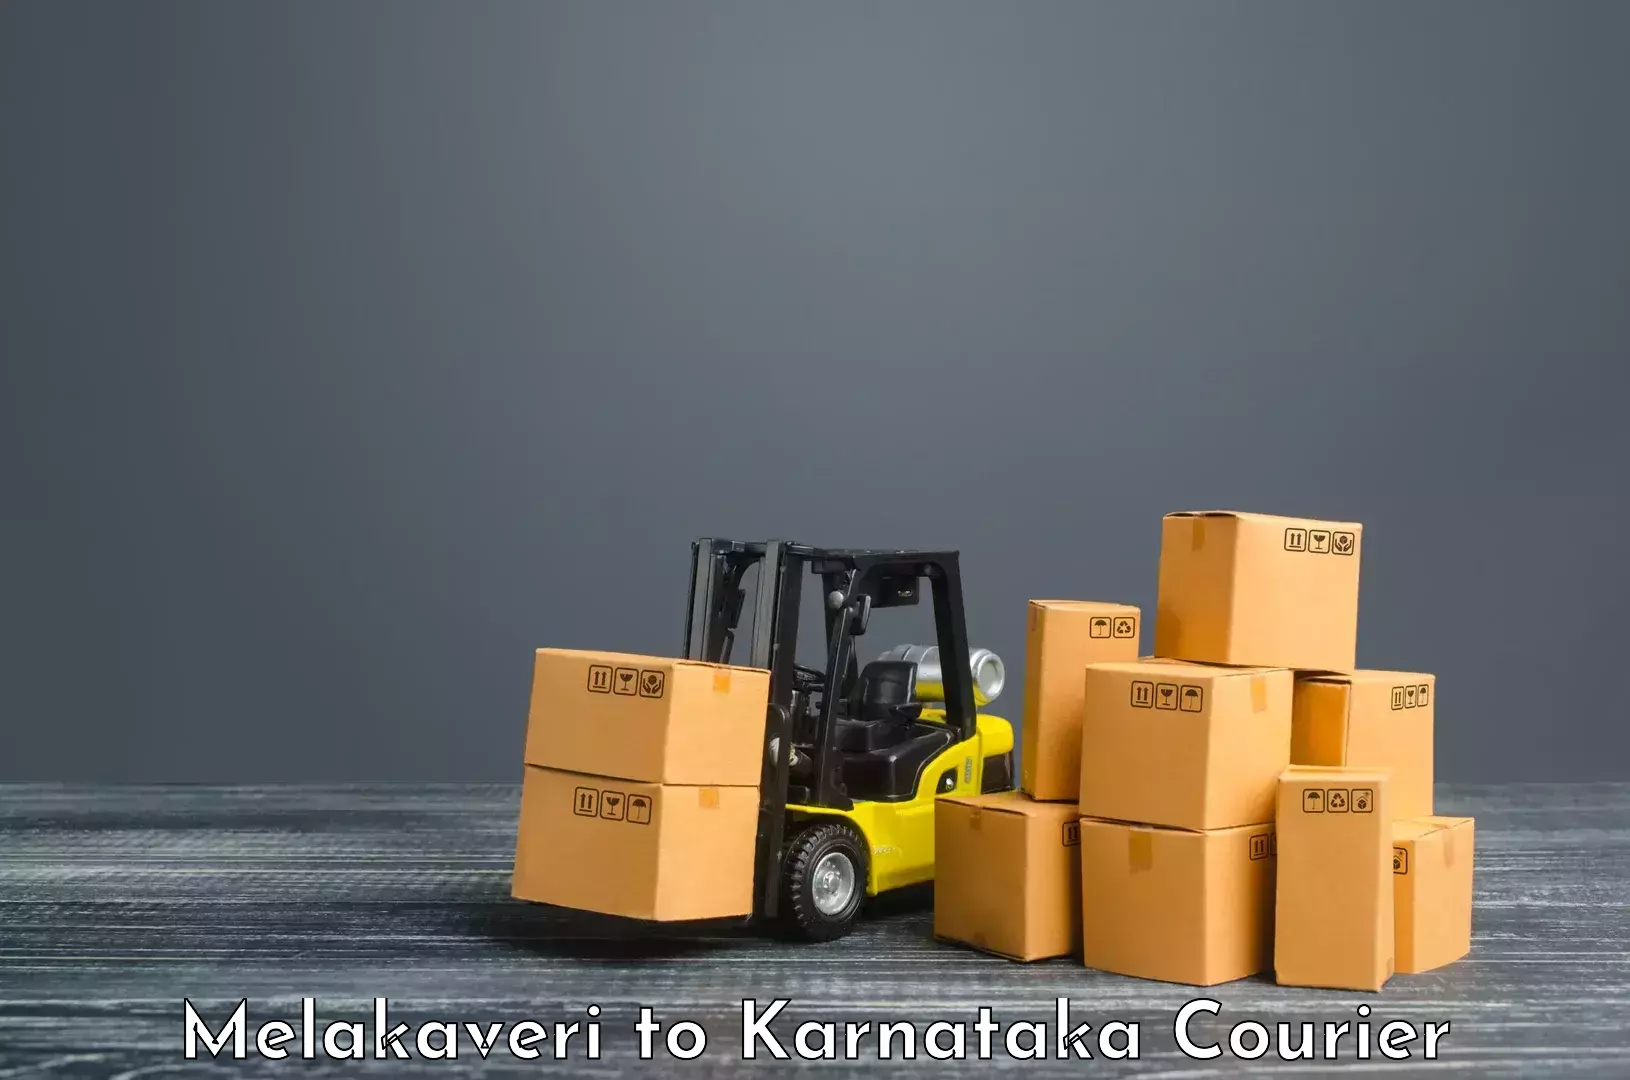 Express package delivery Melakaveri to Kanjarakatte